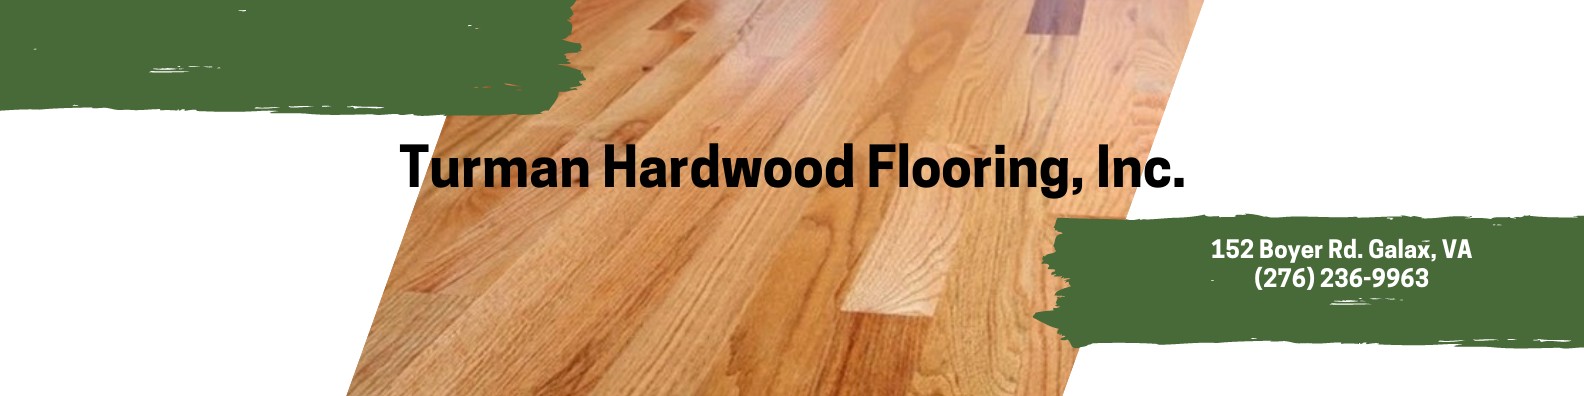 Turman Hardwood Flooring Inc Linkedin, Turman Hardwood Flooring